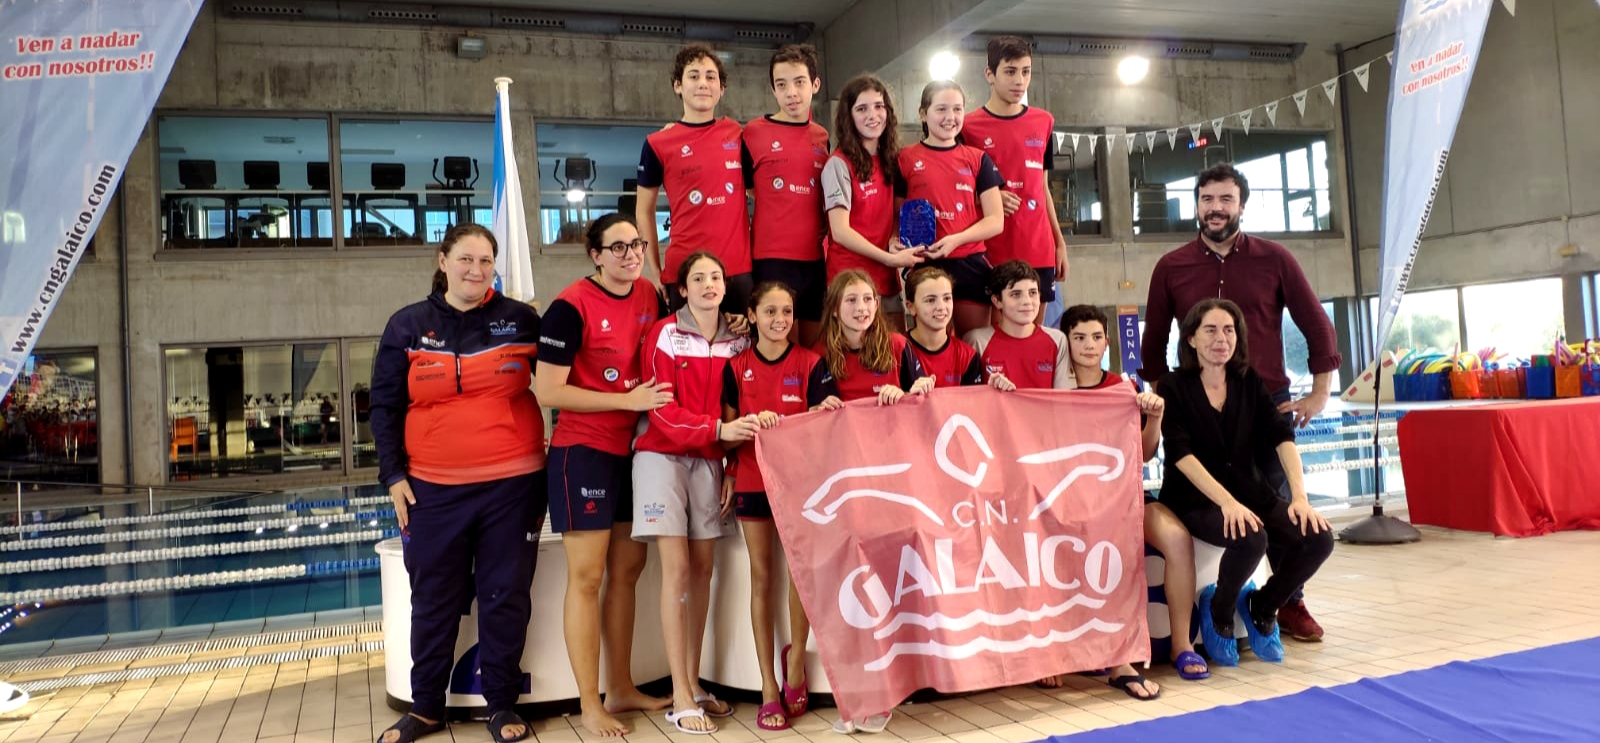 El CN Galaico estará en el Campeonato Gallego Alevín de Verano con 11 nadadores y nadadoras